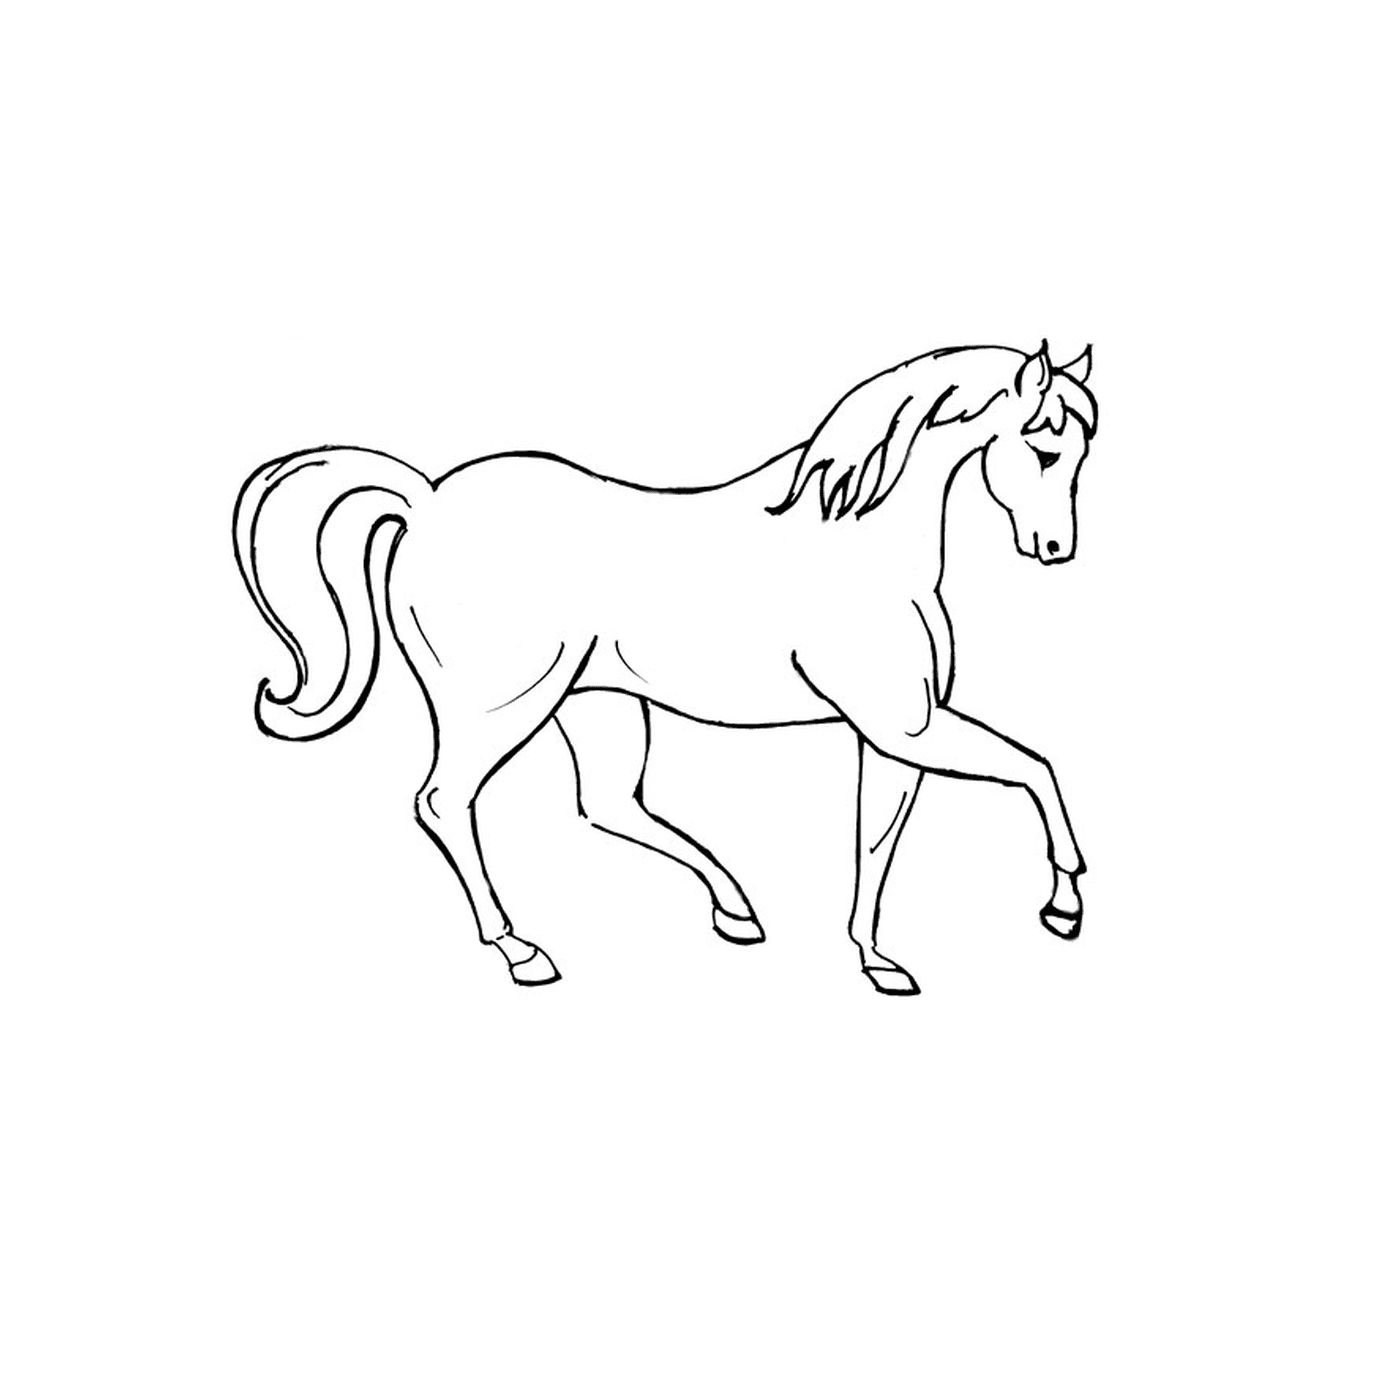  Brac Horse - Un cavallo bianco con i capelli lunghi 